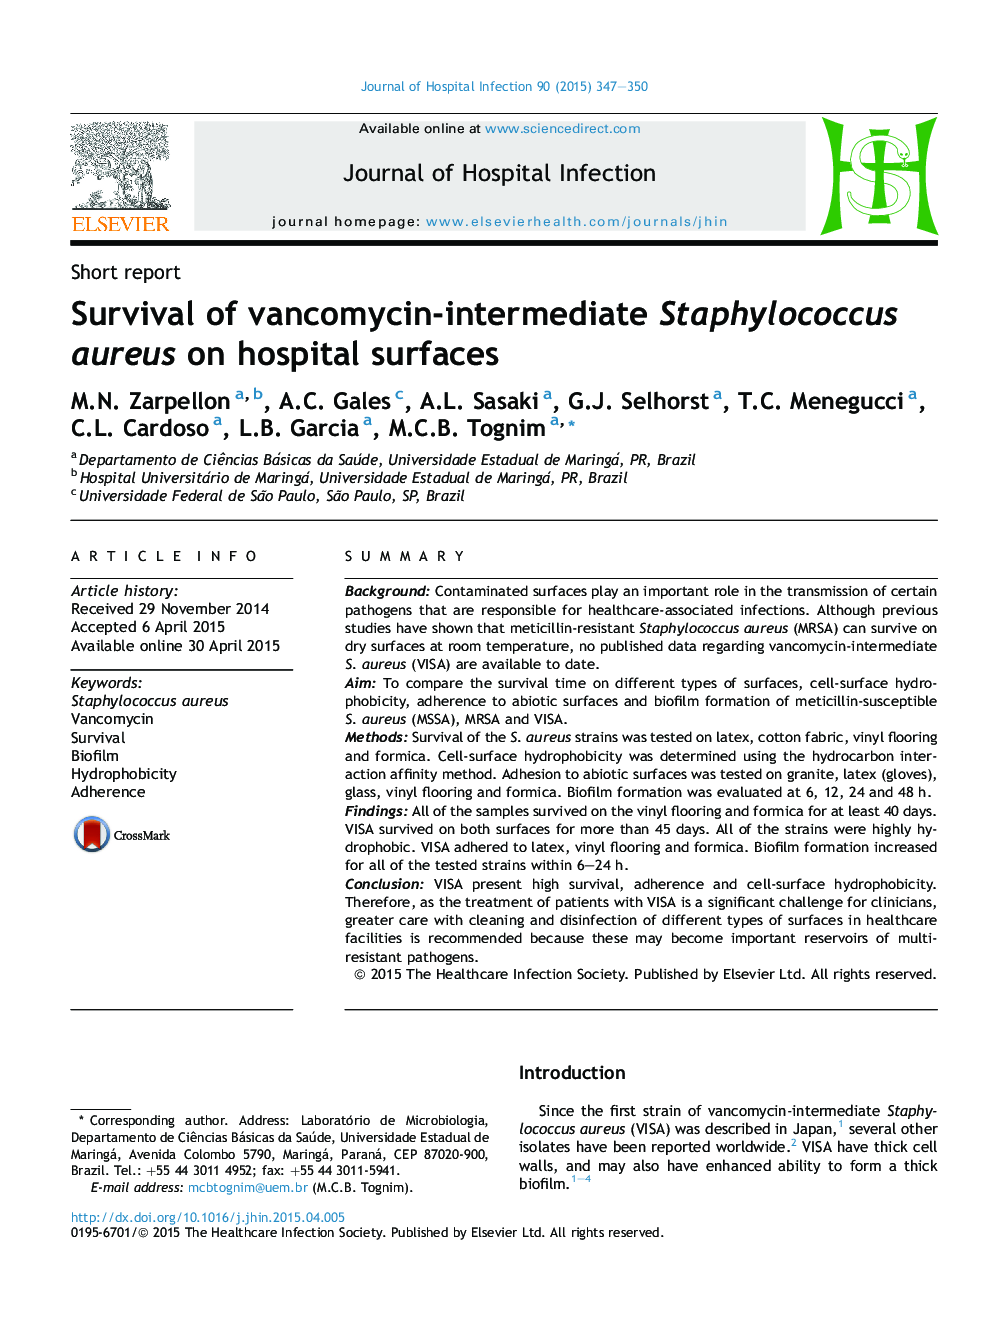 Survival of vancomycin-intermediate Staphylococcus aureus on hospital surfaces